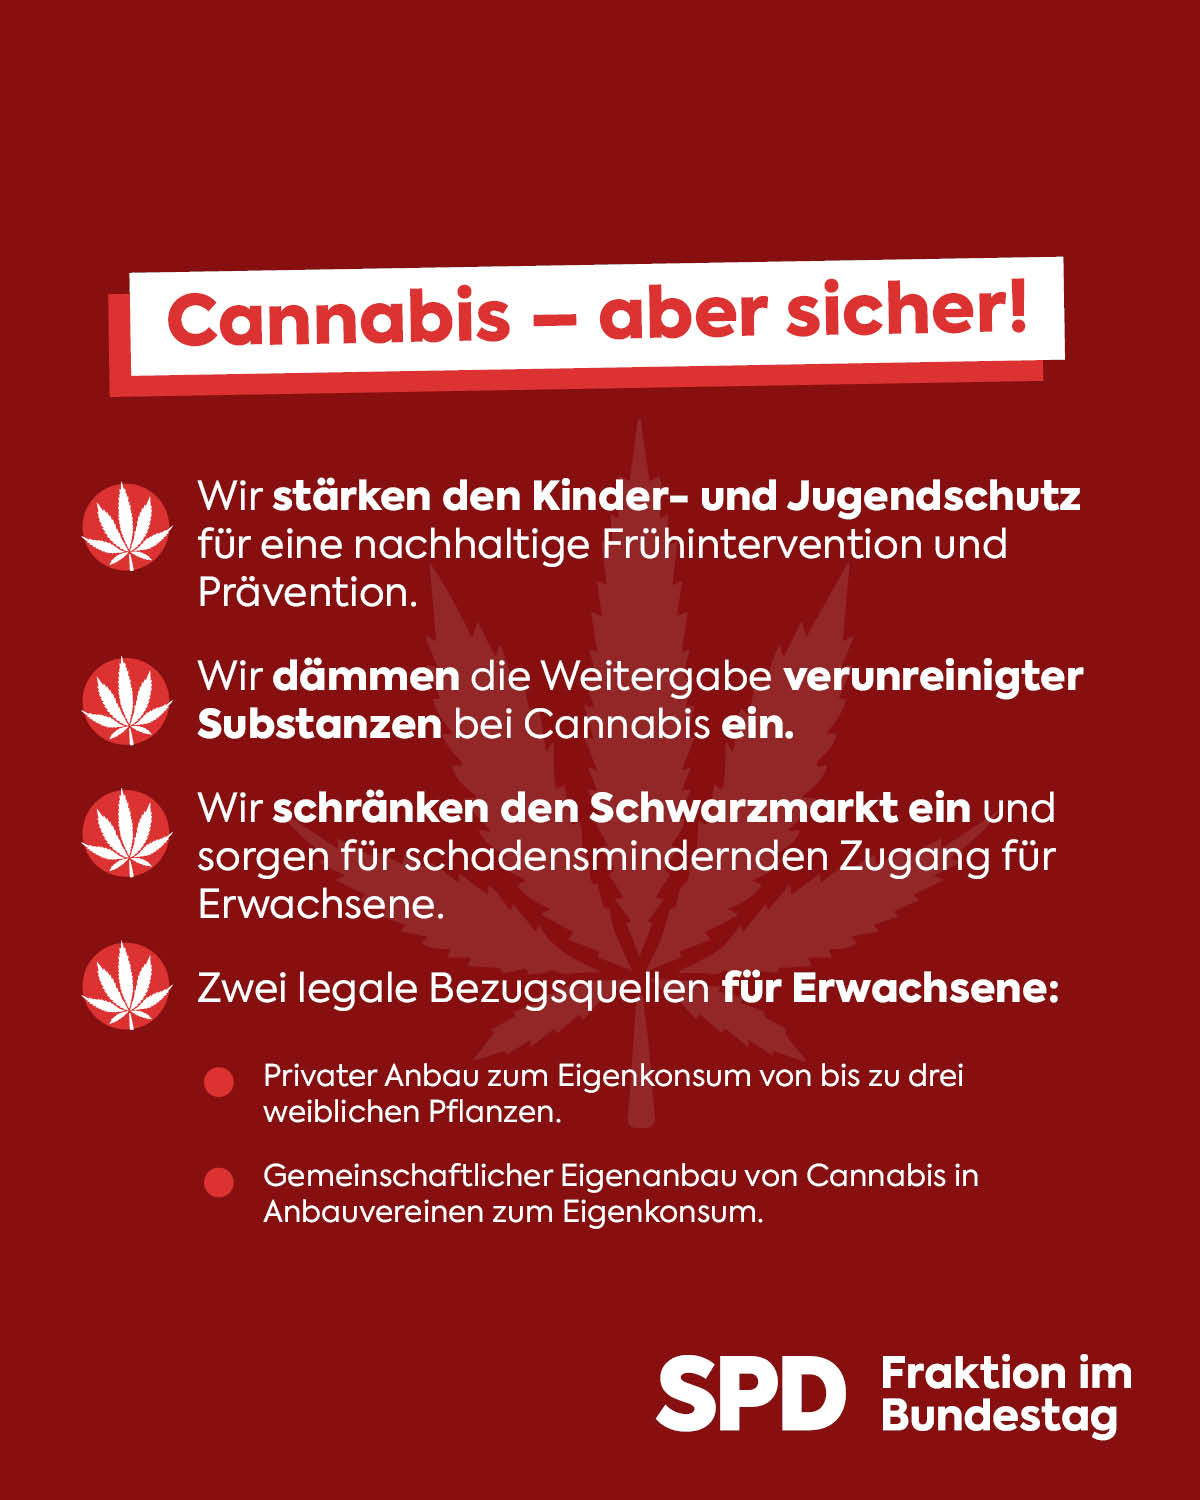 sharepic_cannabis